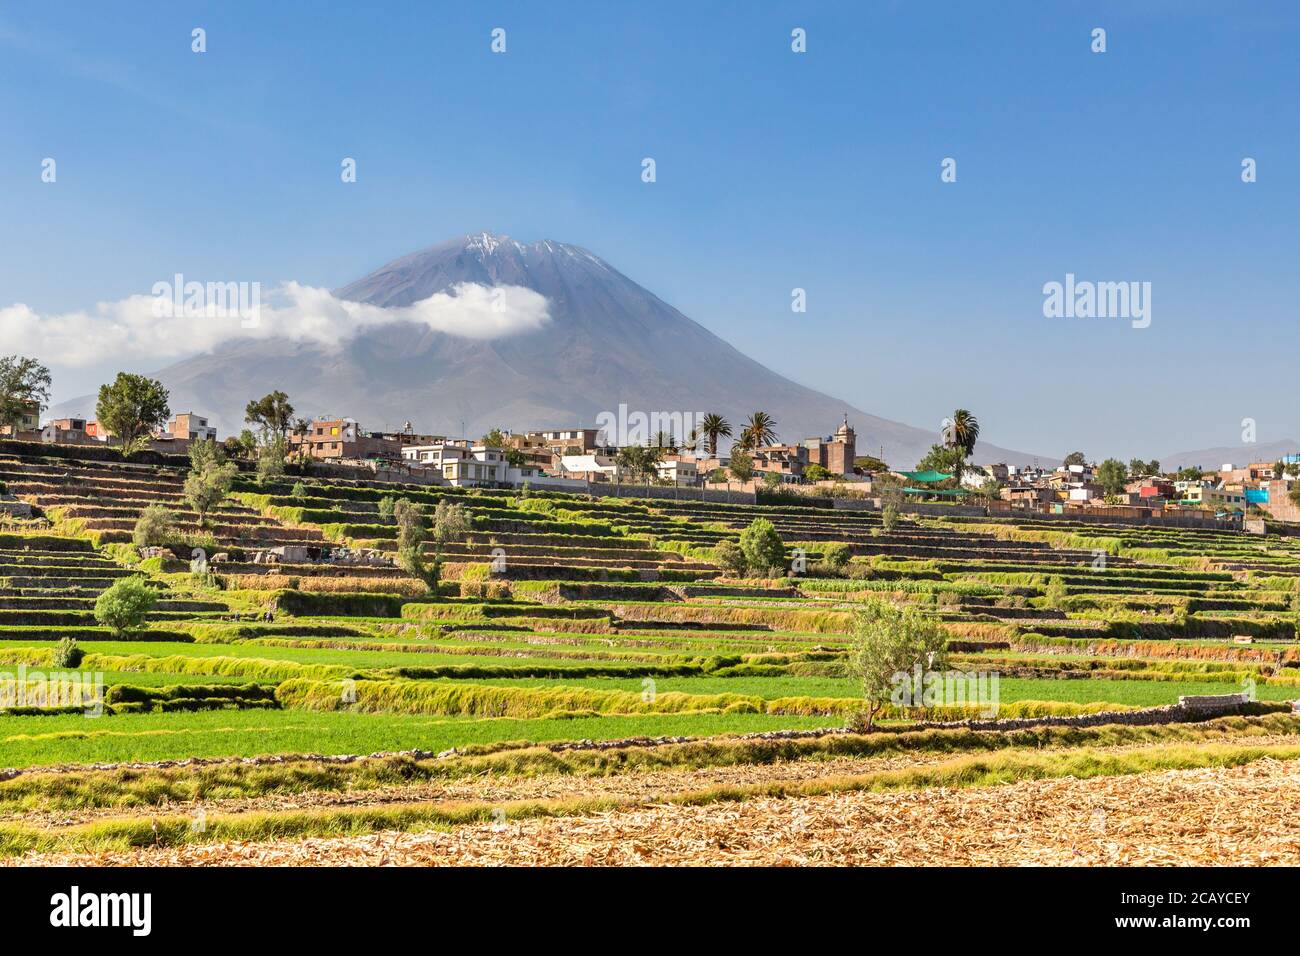 Vulcano Mitti dormiente sui campi e le case della città peruviana di Arequipa, Perù Foto Stock